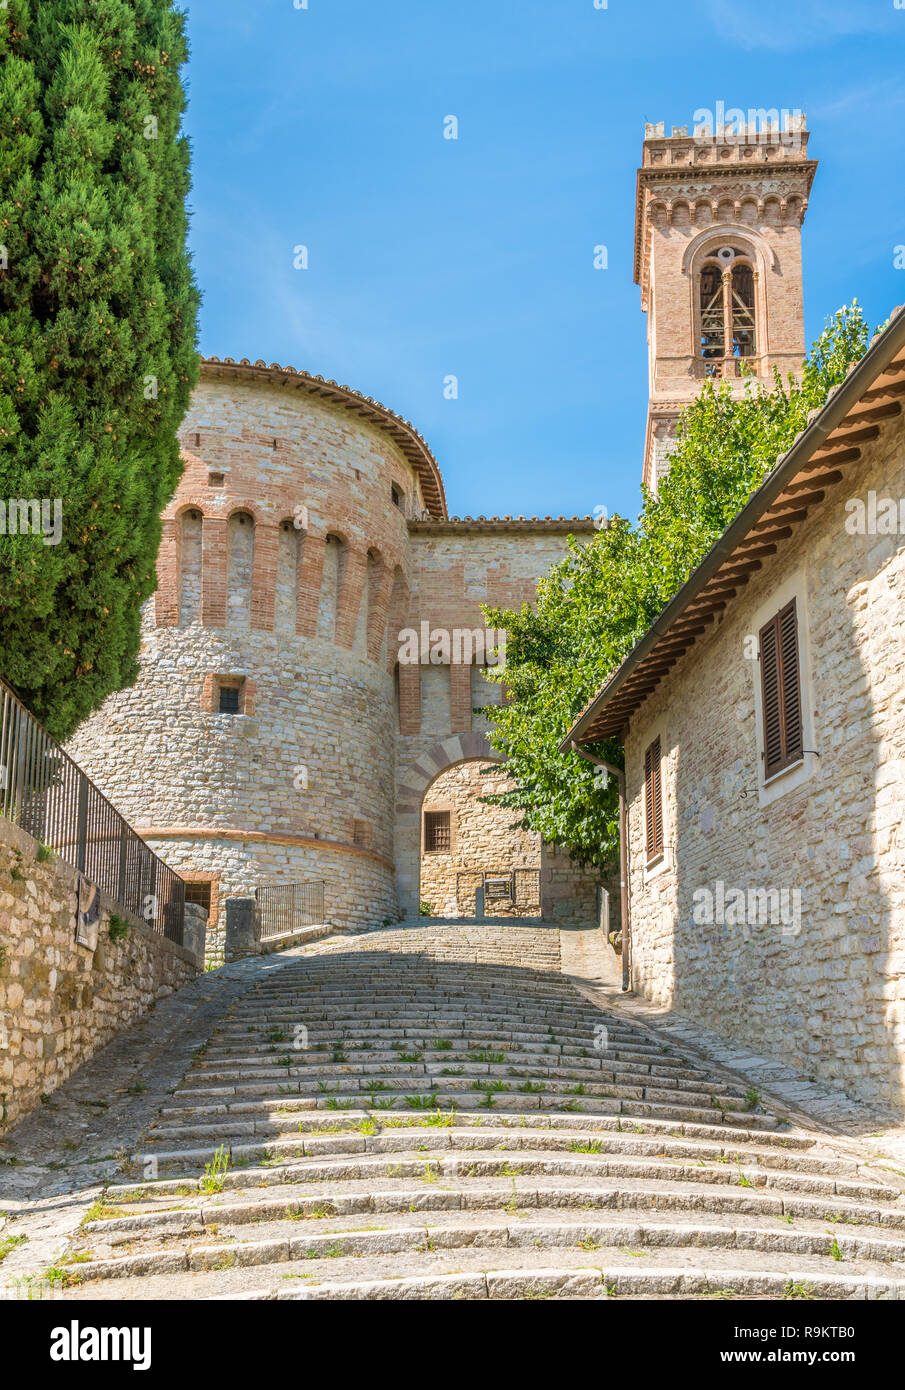 El idílico pueblo de Corciano, cerca de Perugia, en la región de Umbria (Italia). Foto de stock